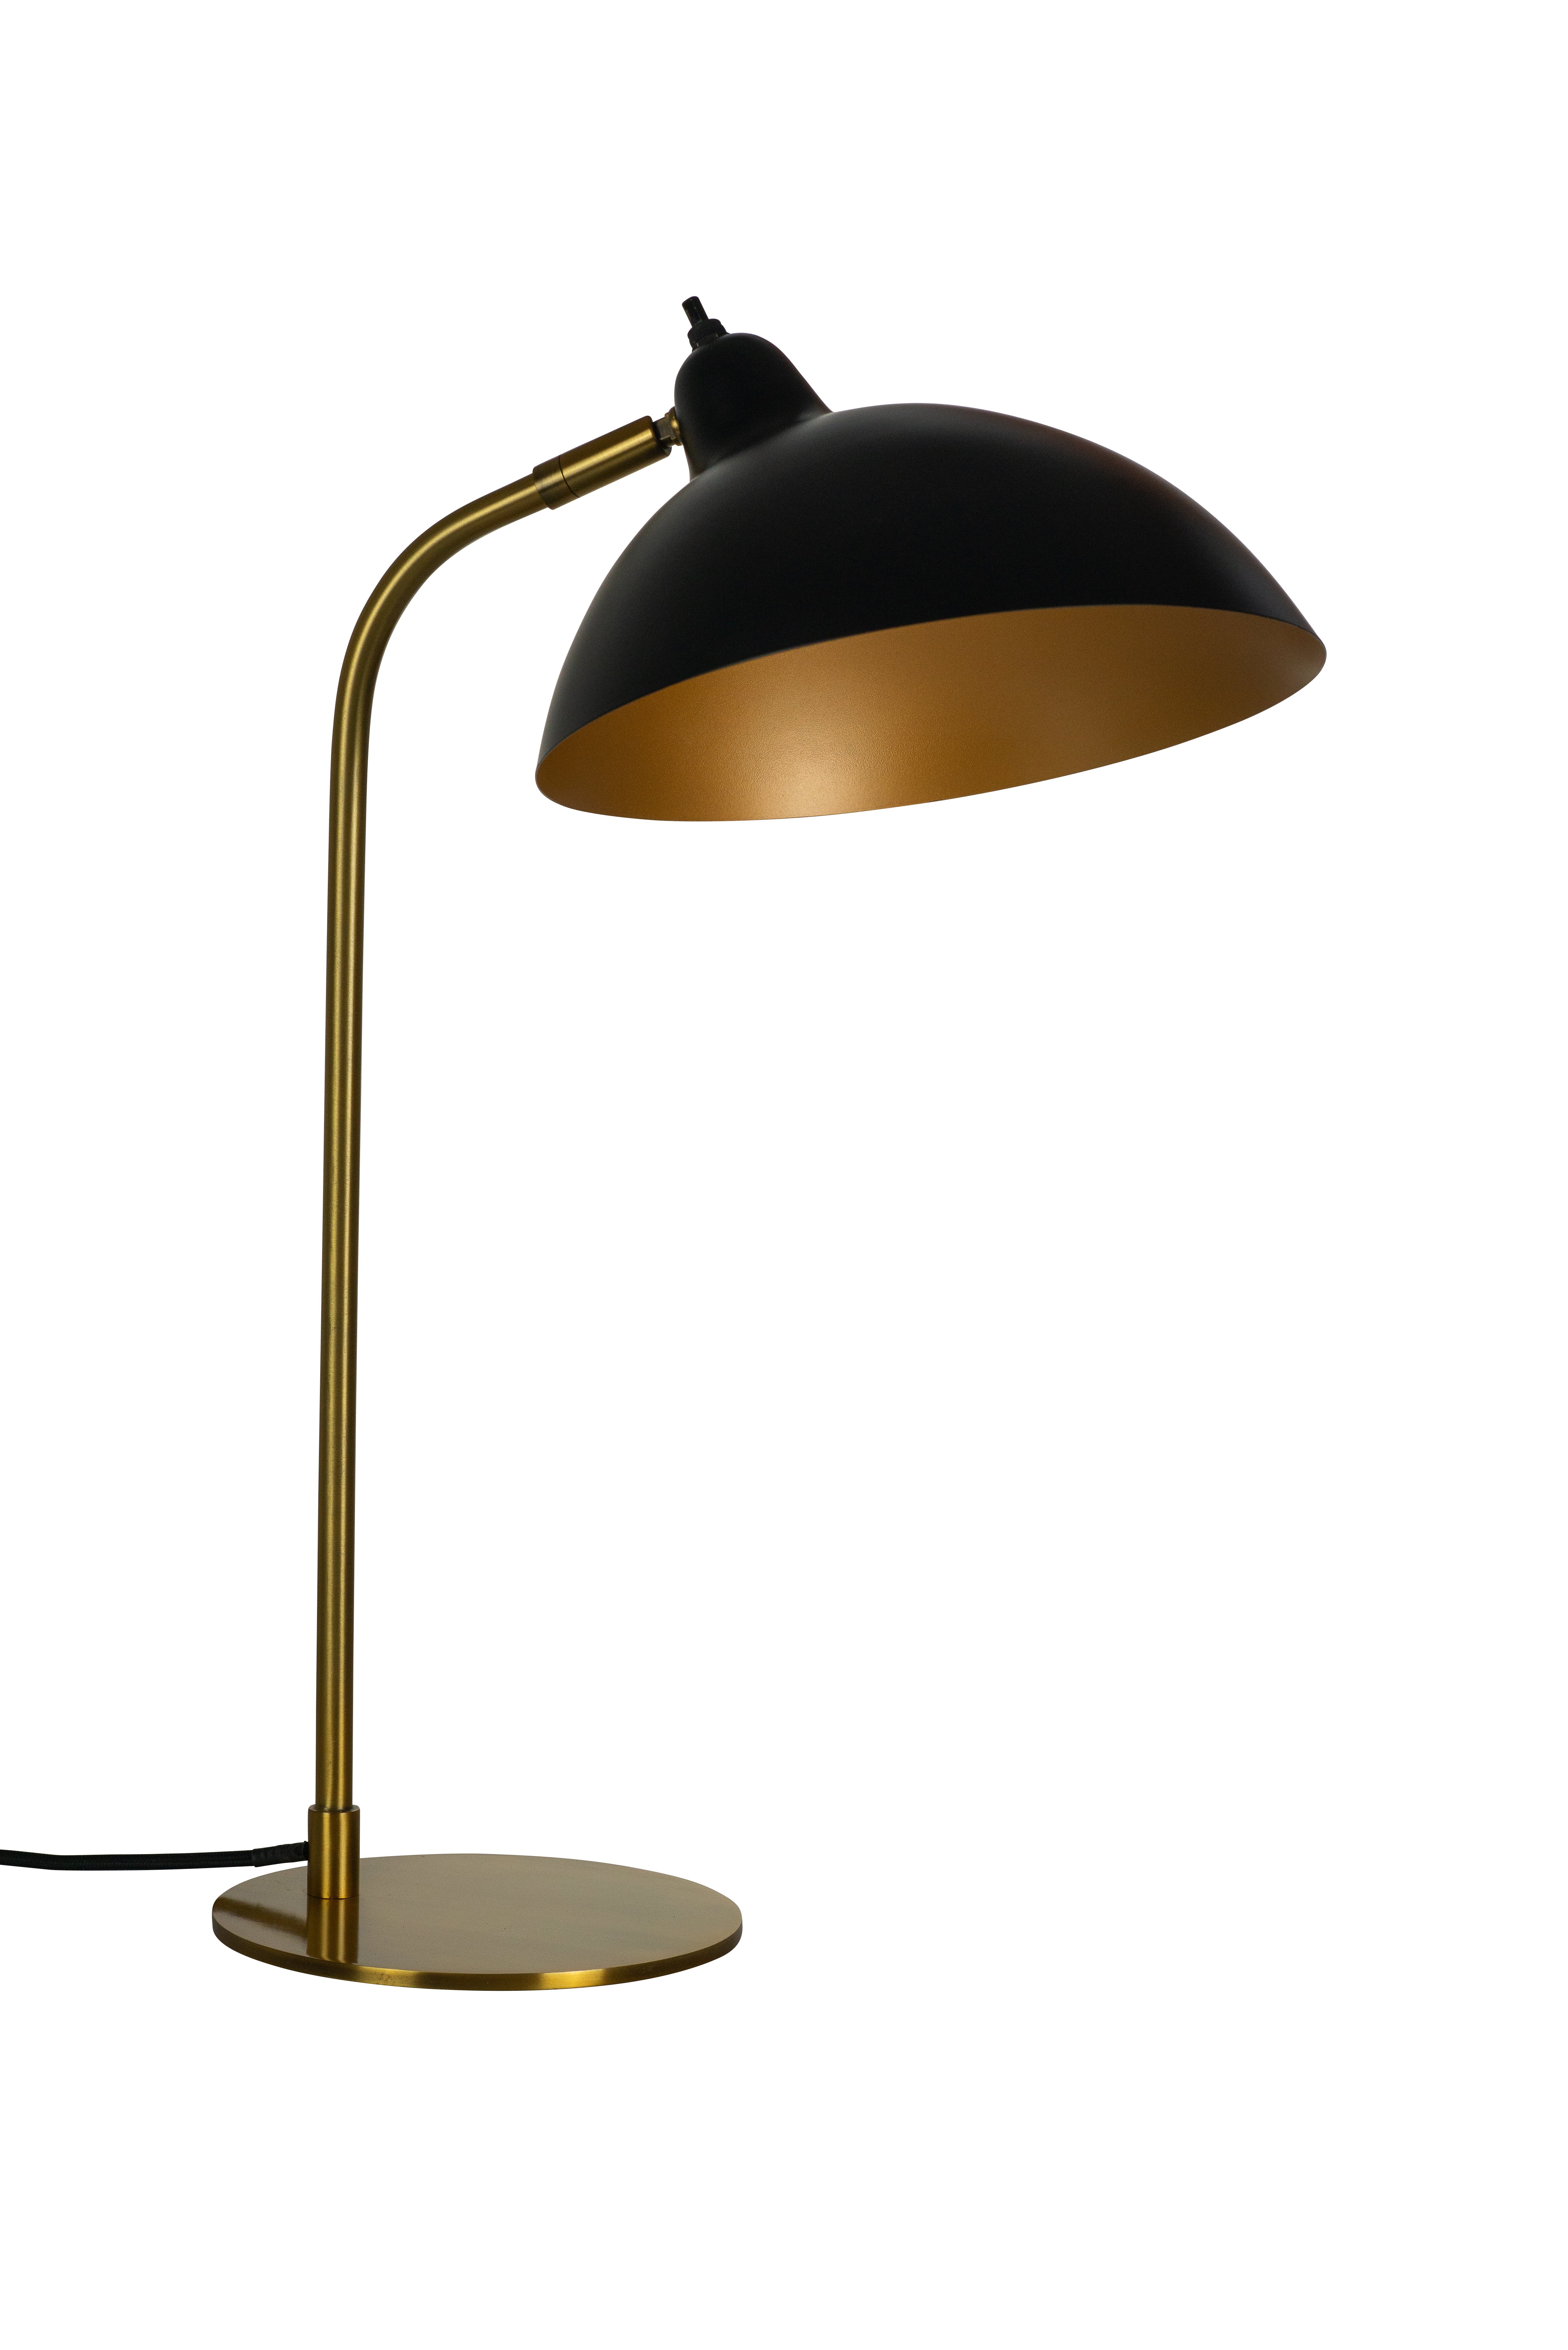 Dyberg-Larsen - Futura Antik Brass Table Lampe - Black/Brass (7220)